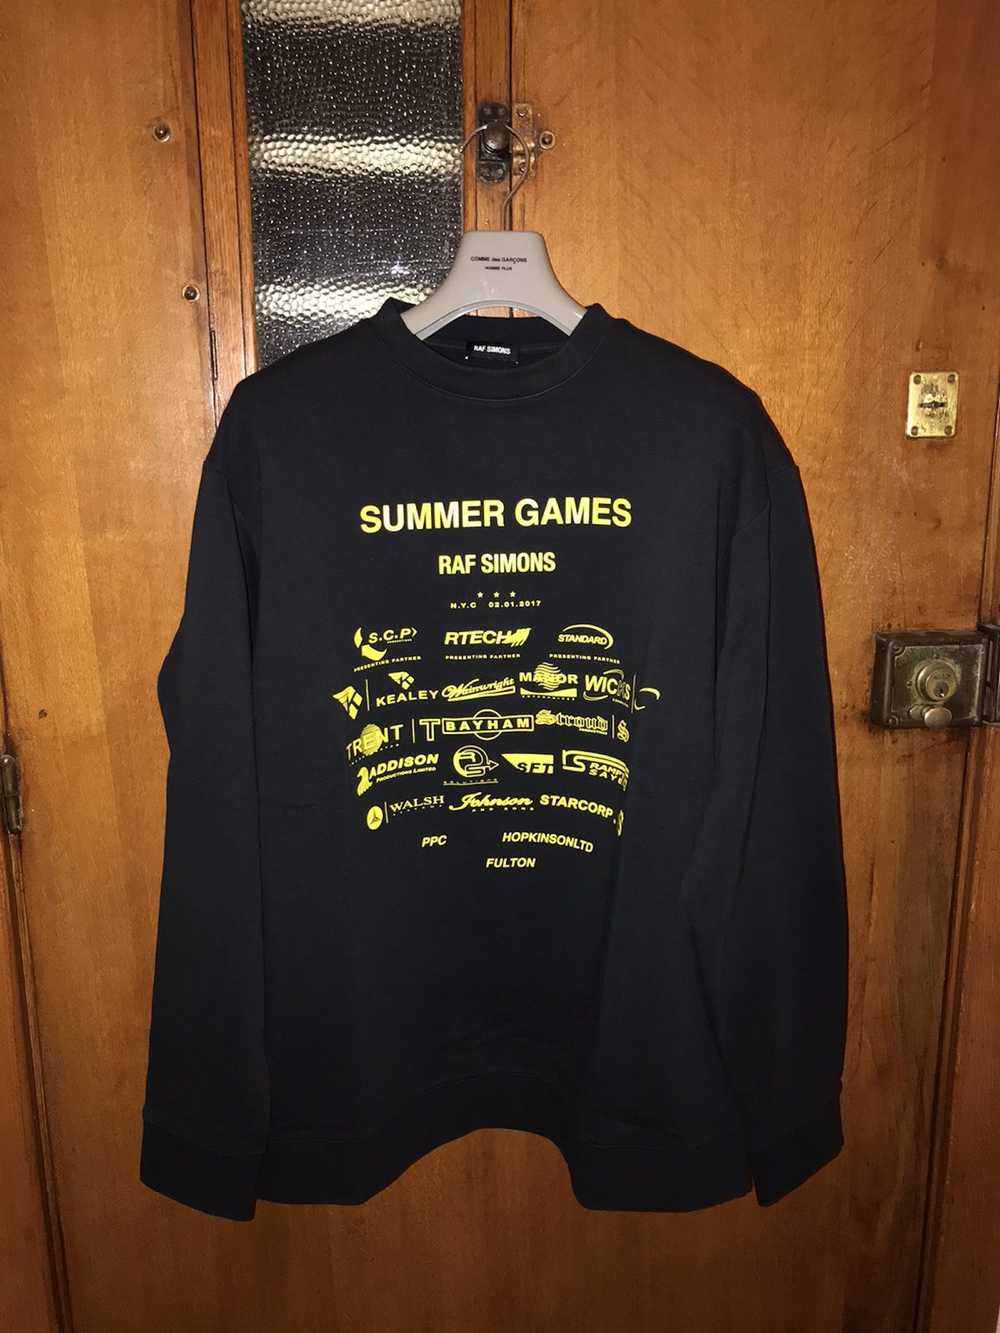 Raf Simons Raf Simons Summer Games Sweatshirt - image 1